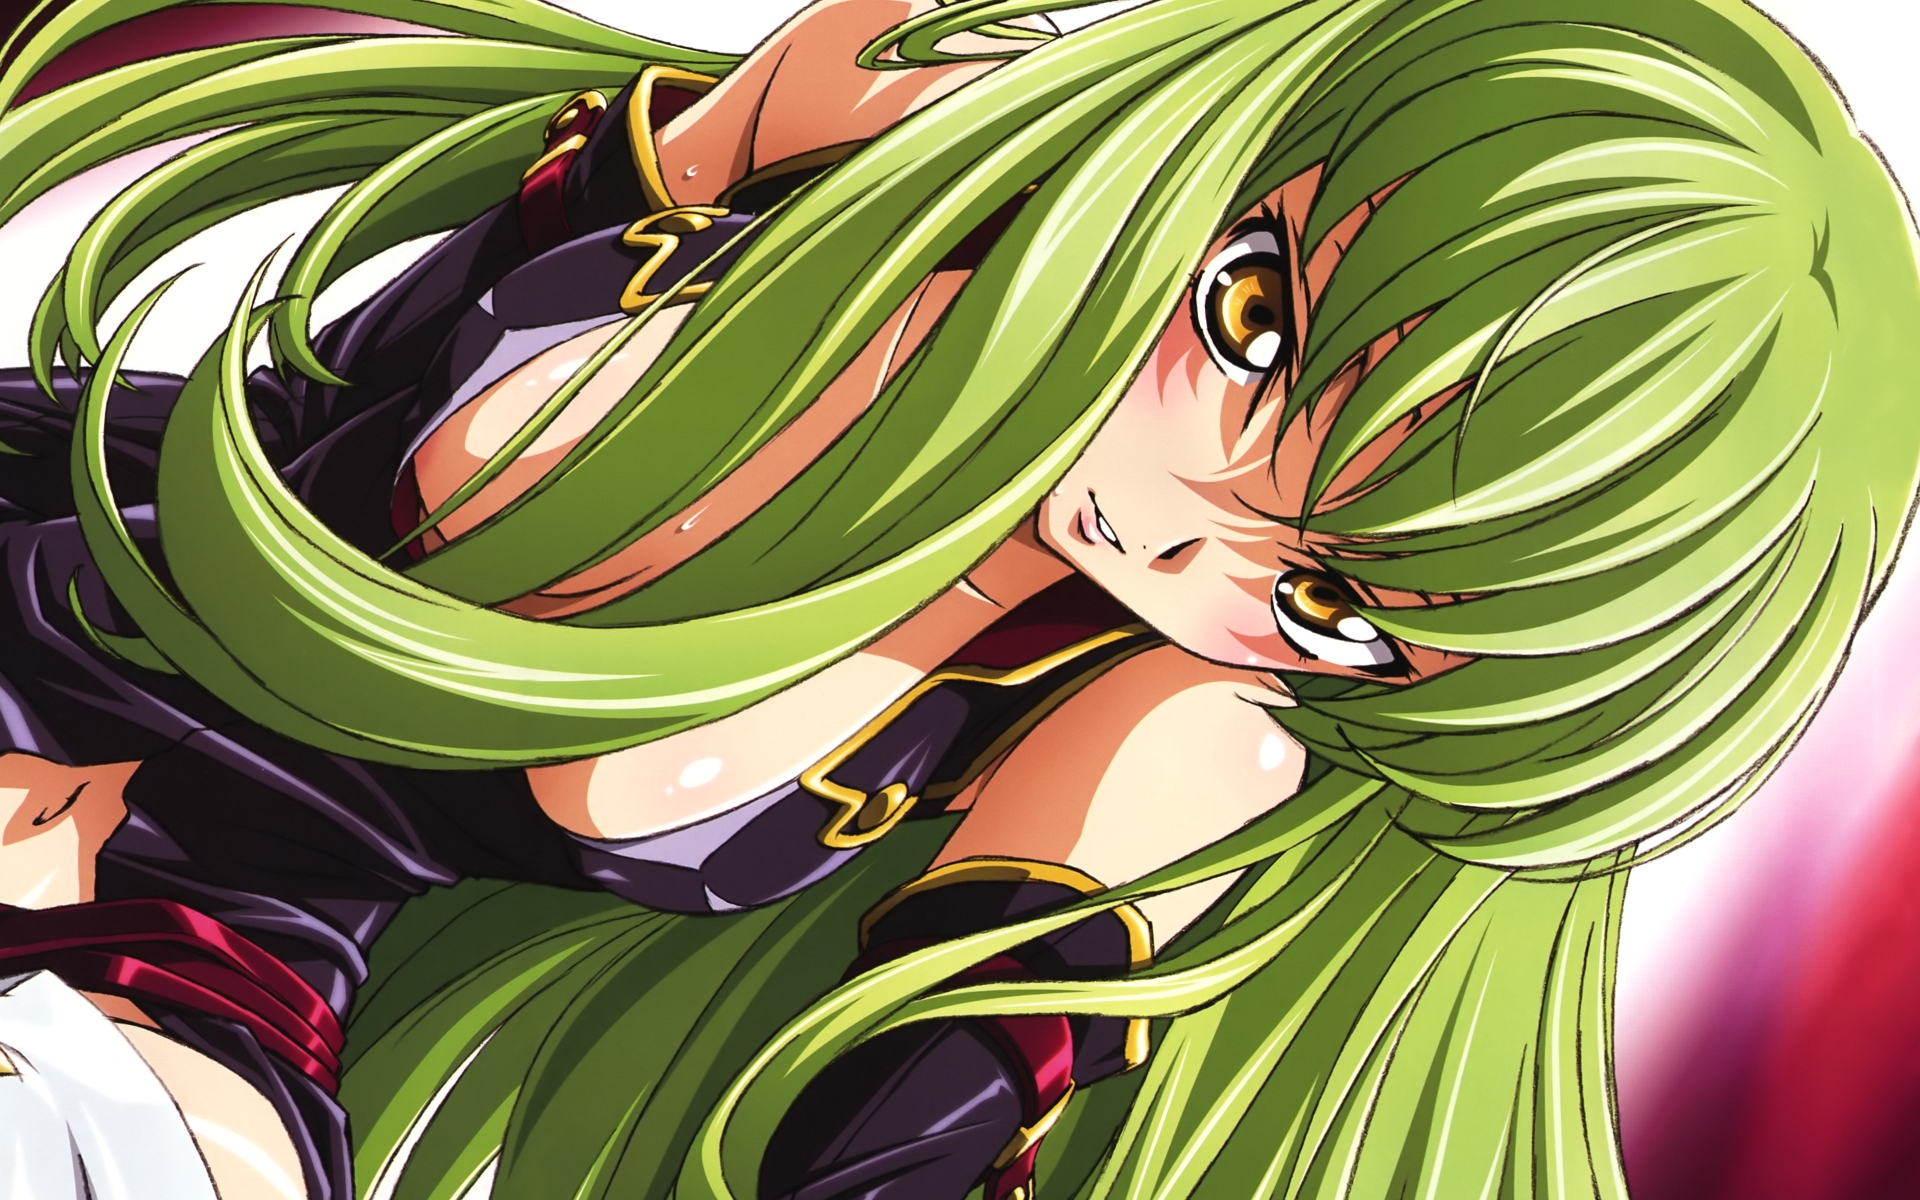 Code Geass, green hair, C.C., anime - desktop wallpaper